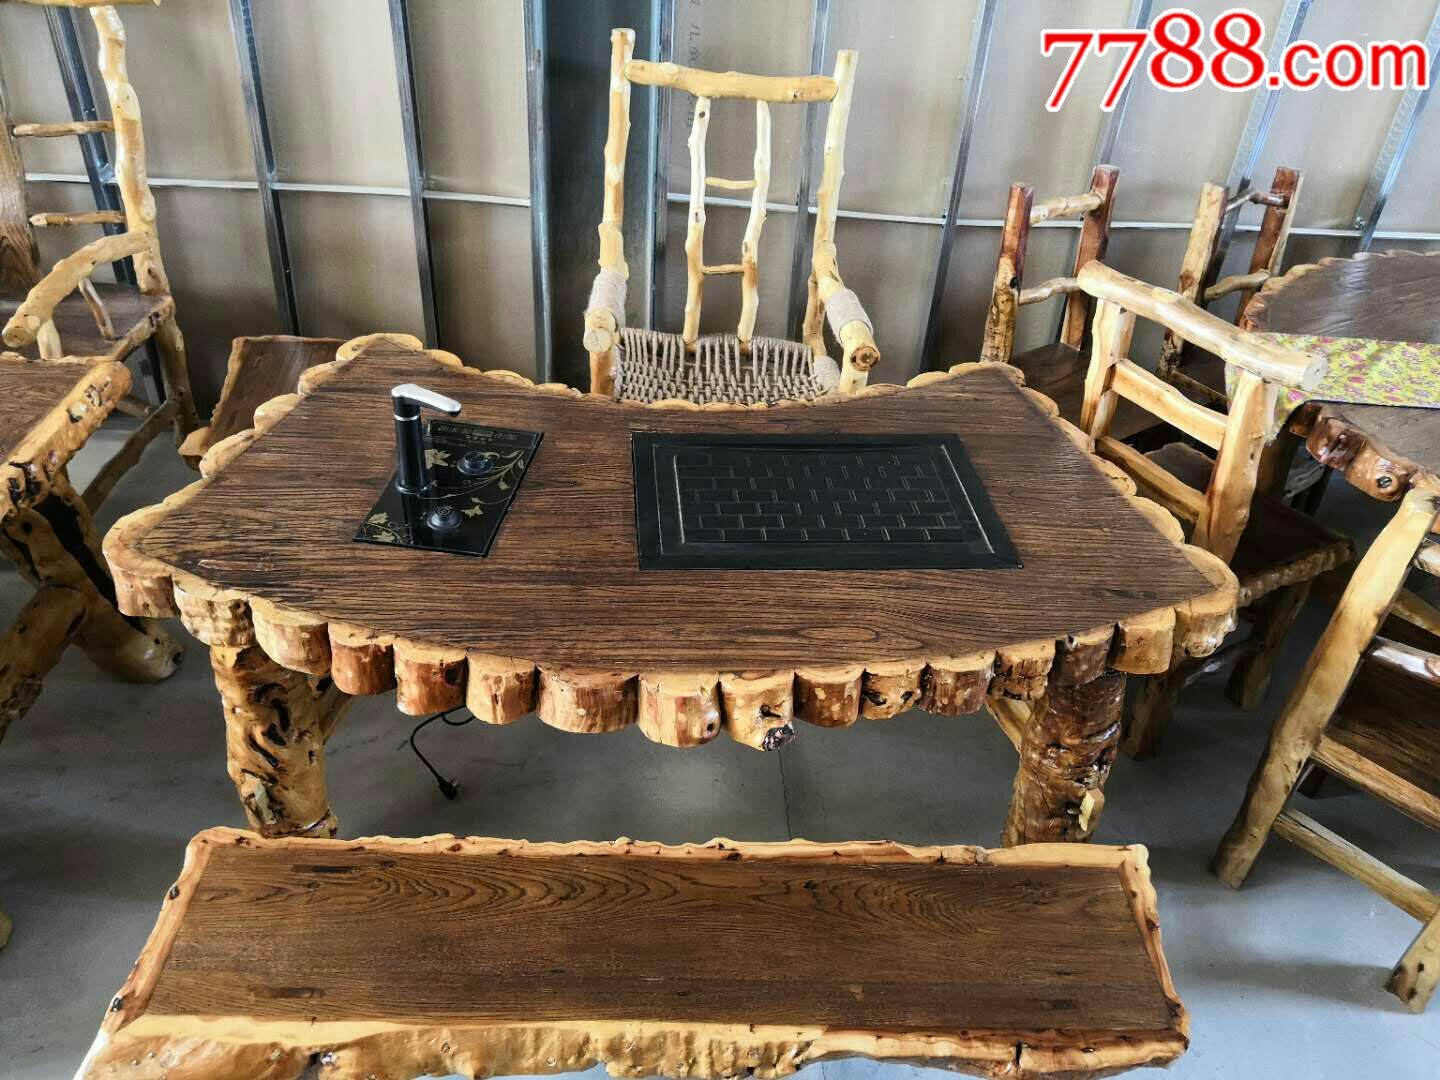 枣木扇形茶桌五件套,一桌一主椅两短凳一长凳,款式新颖,造型独特